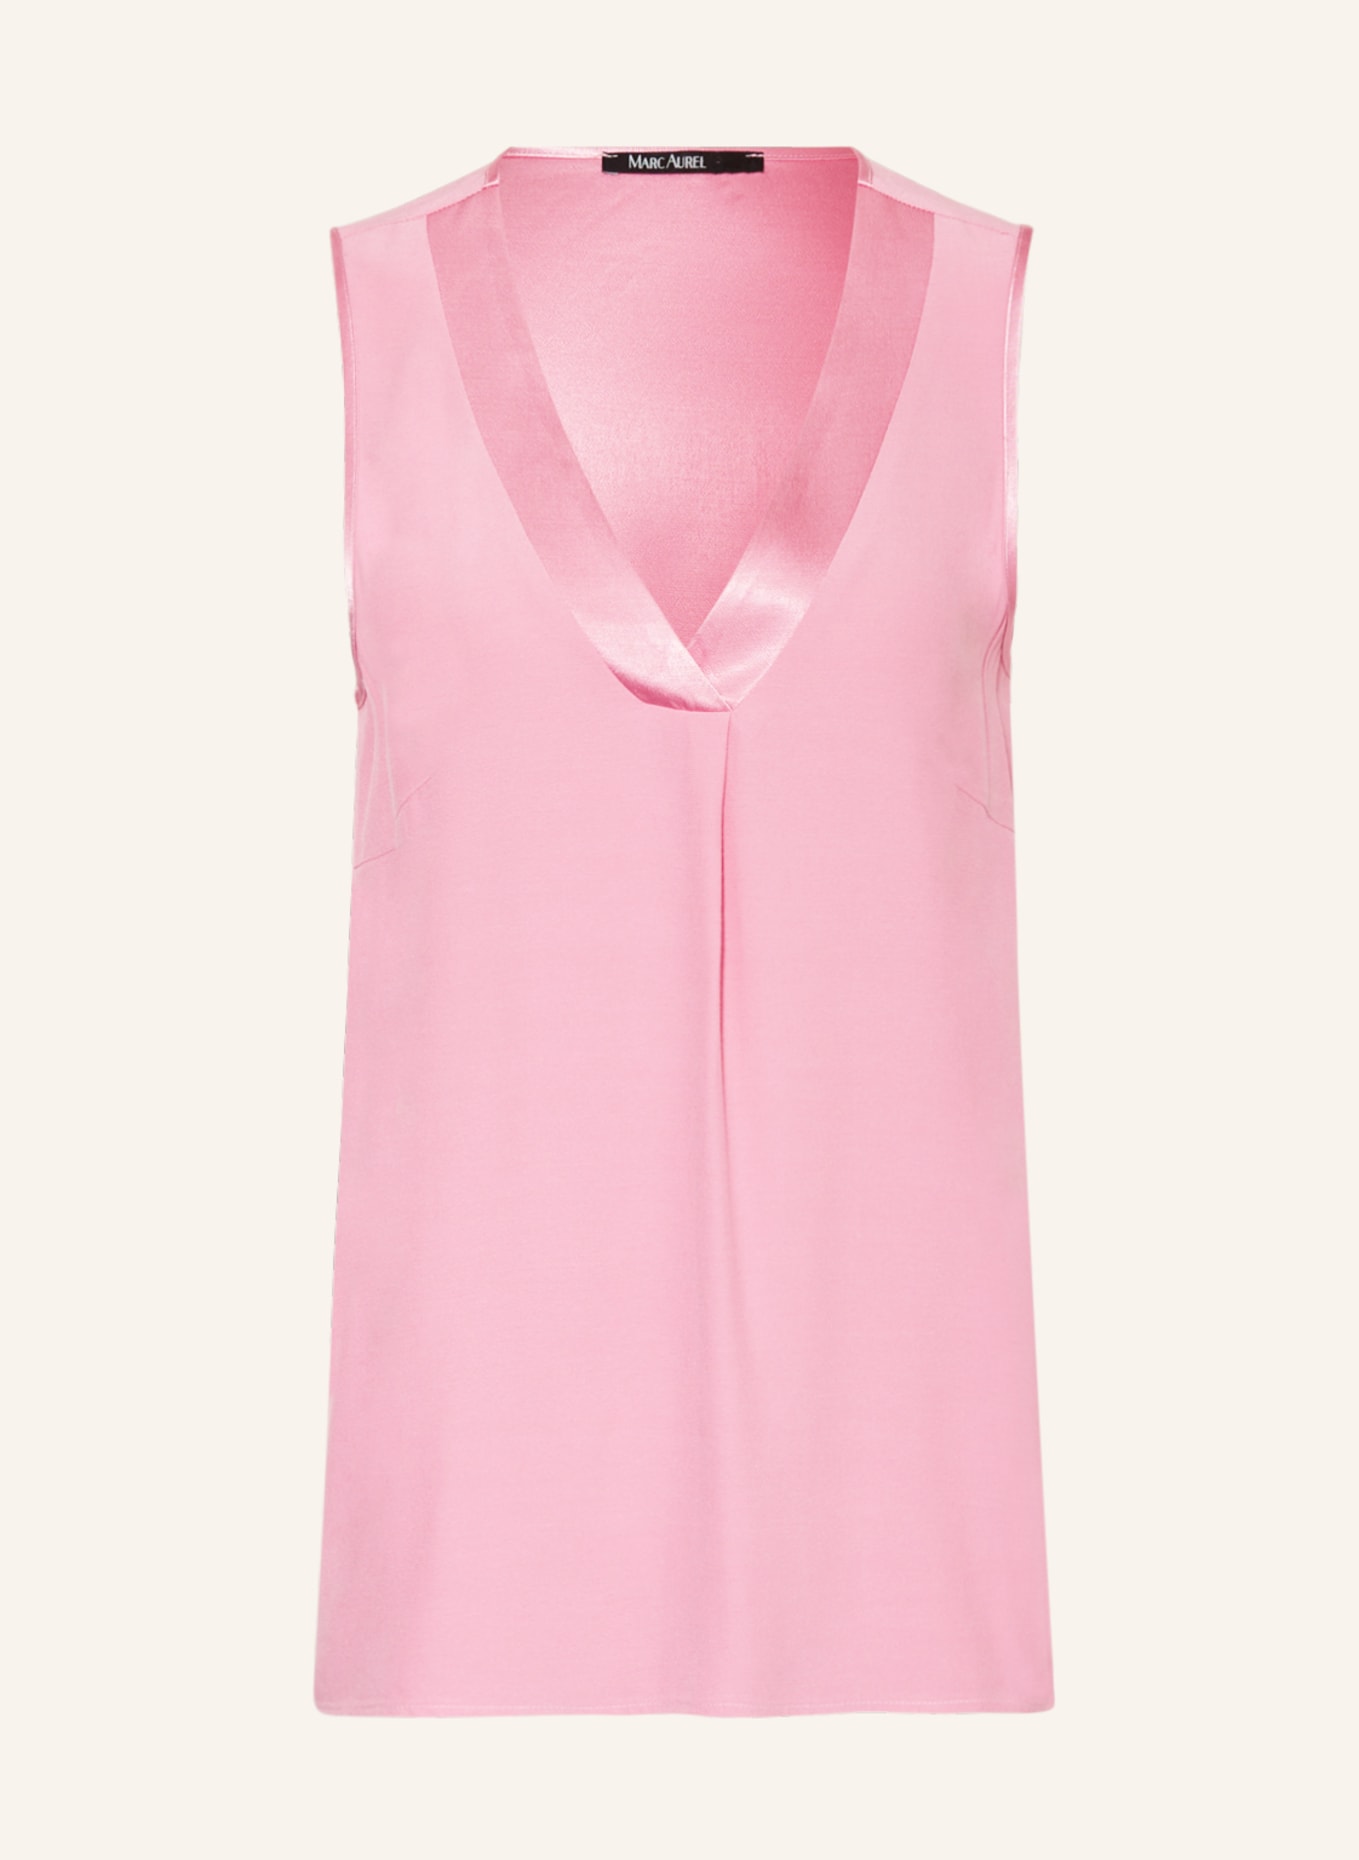 MARC AUREL Blouse top, Color: PINK (Image 1)